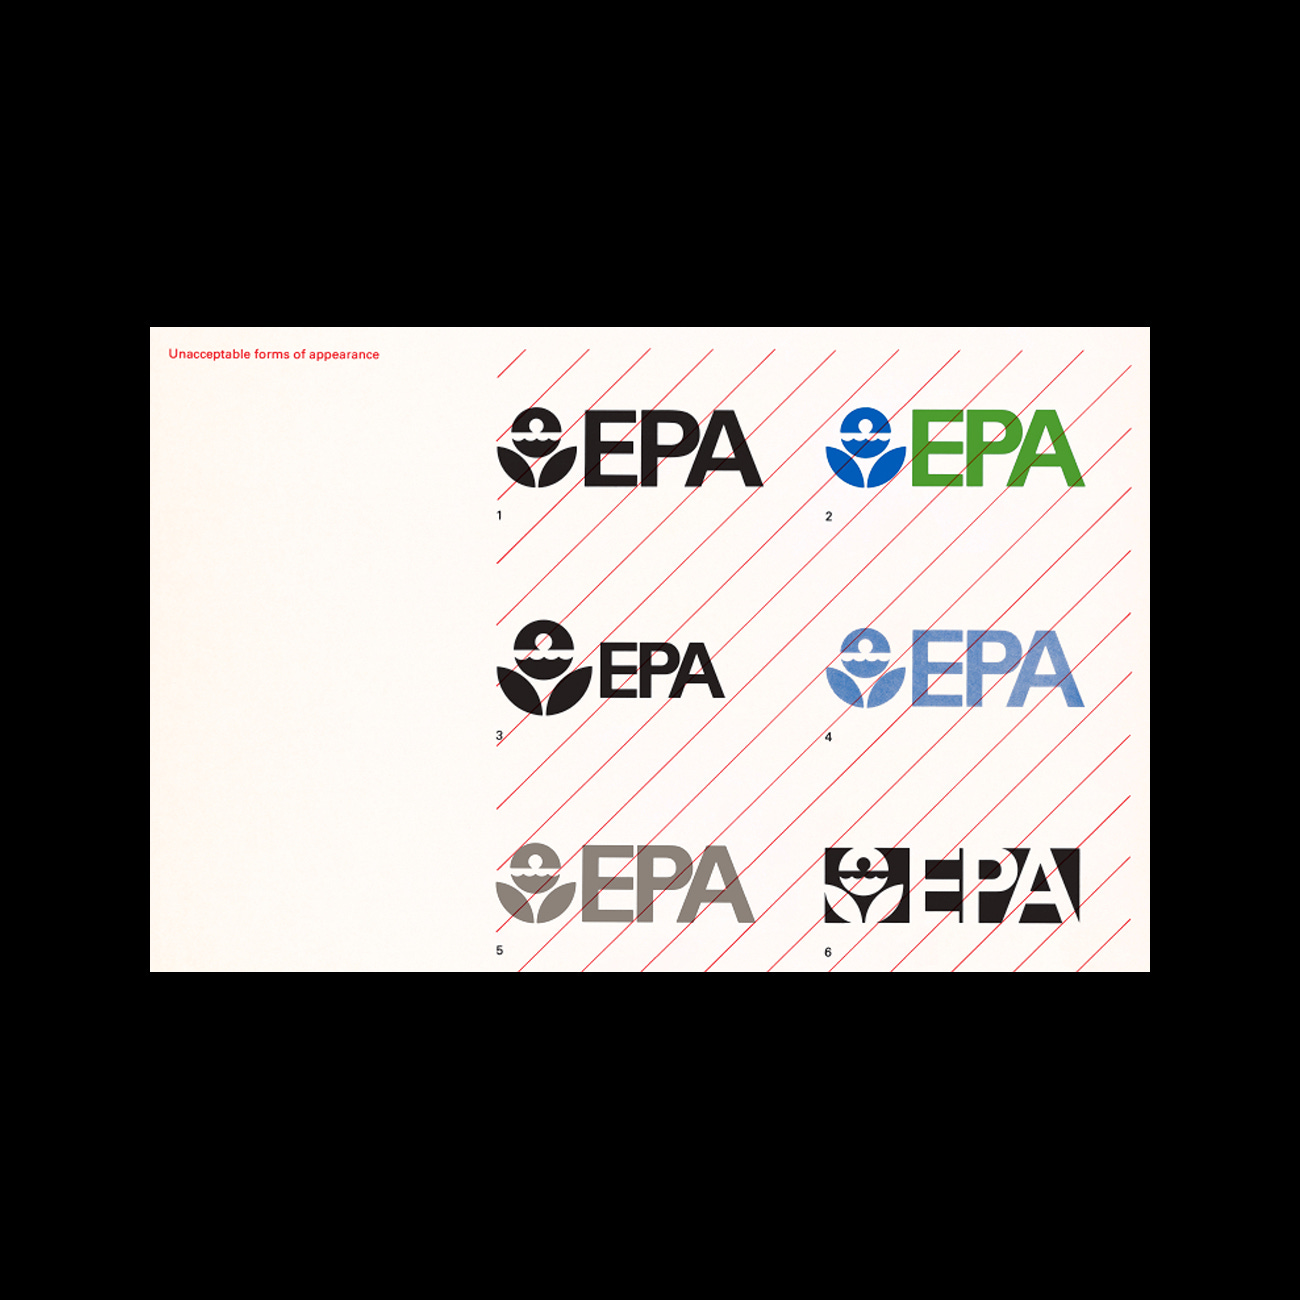 EPA logo by Steff Geissbühler, 1977